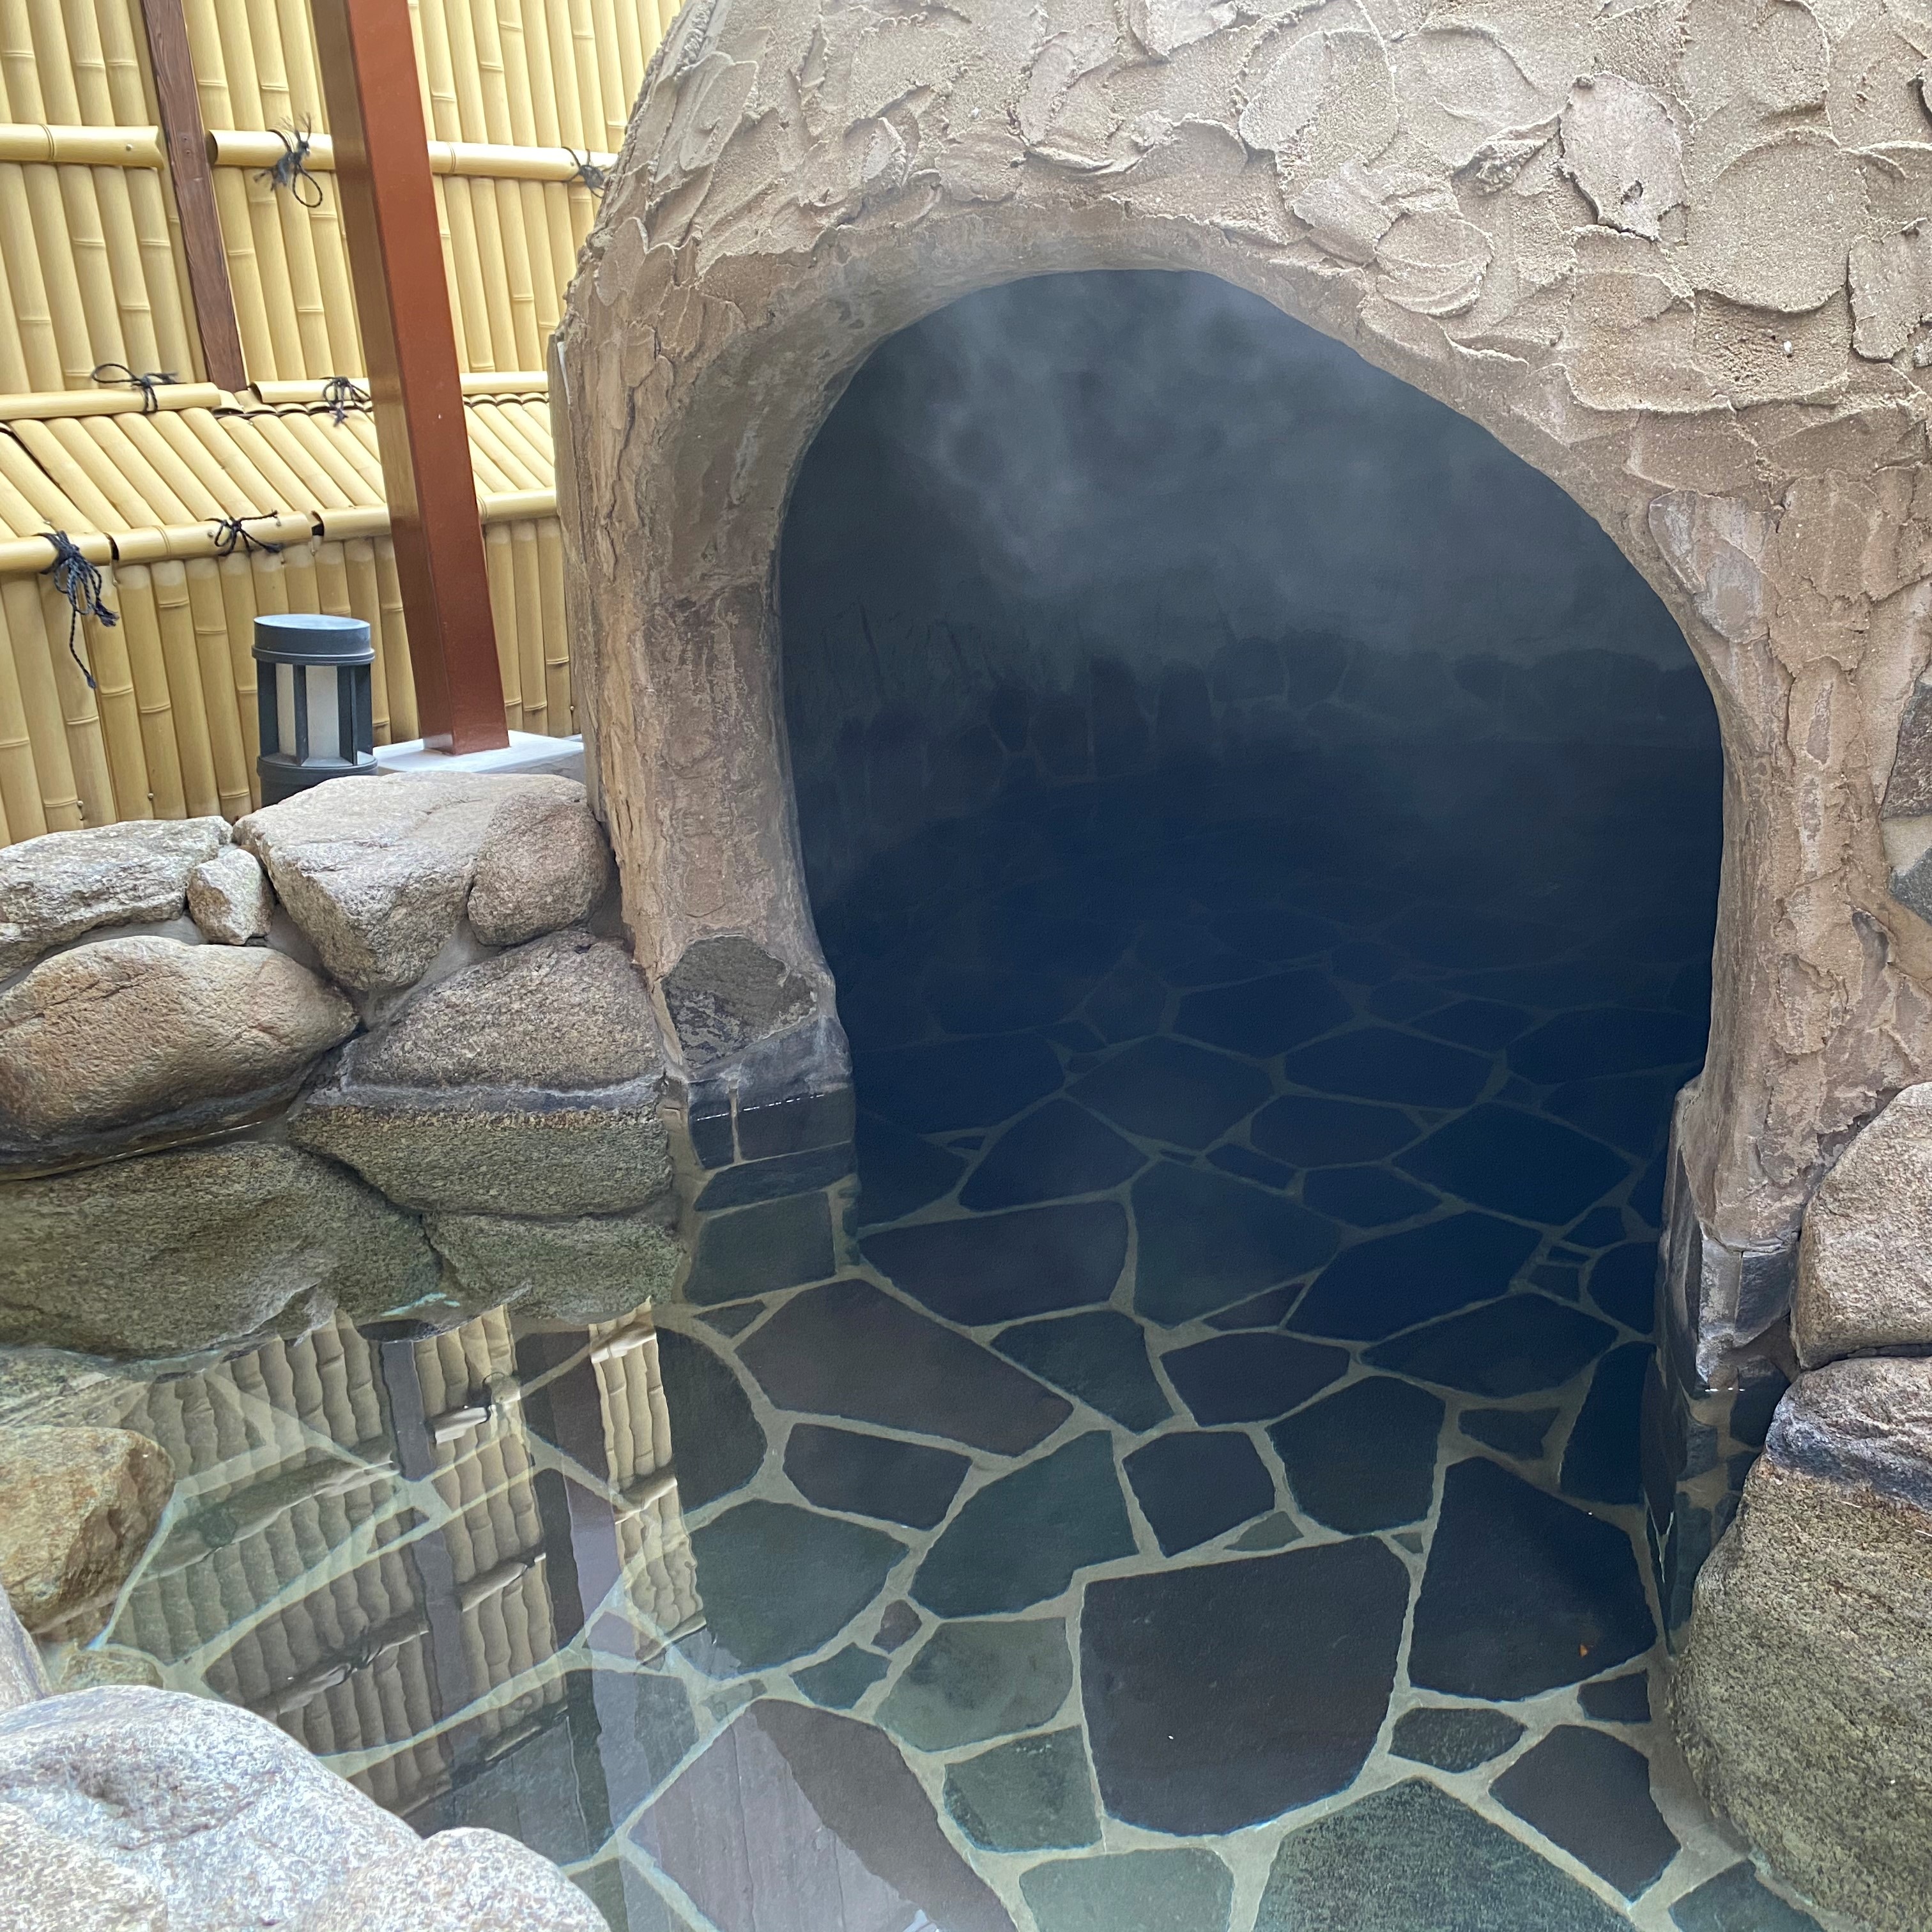 ◆ Men's bath open-air bath (cave bath)